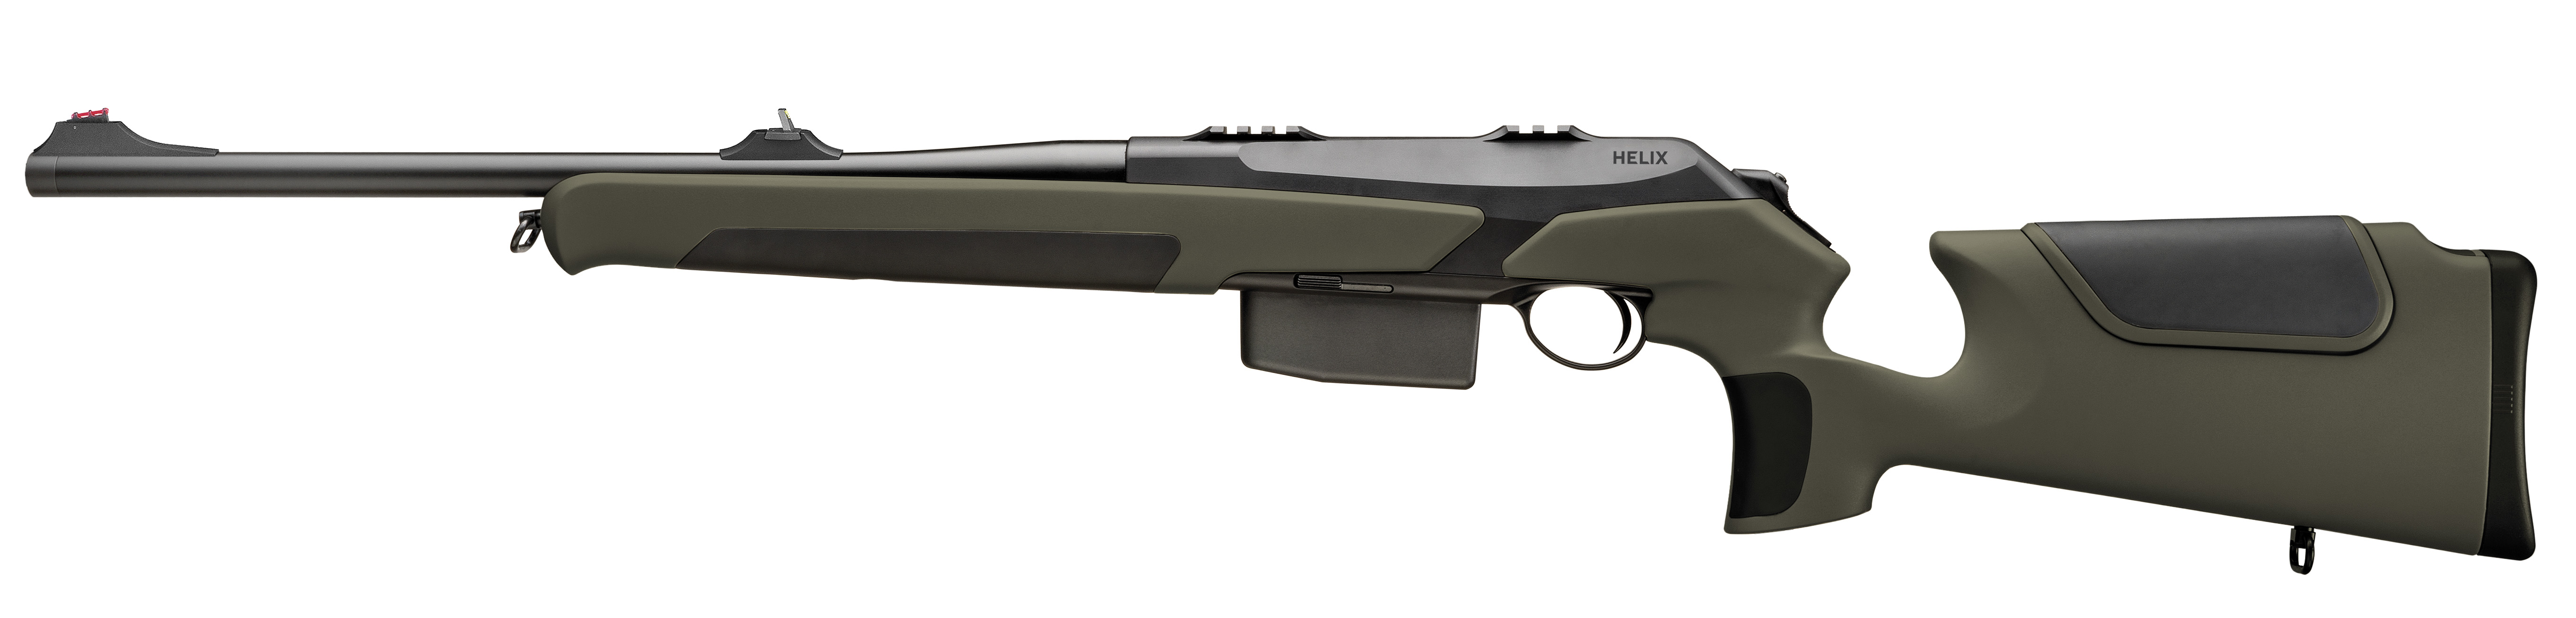 Helix Speedster 8x57IS Mauser m.Vi Gew.51